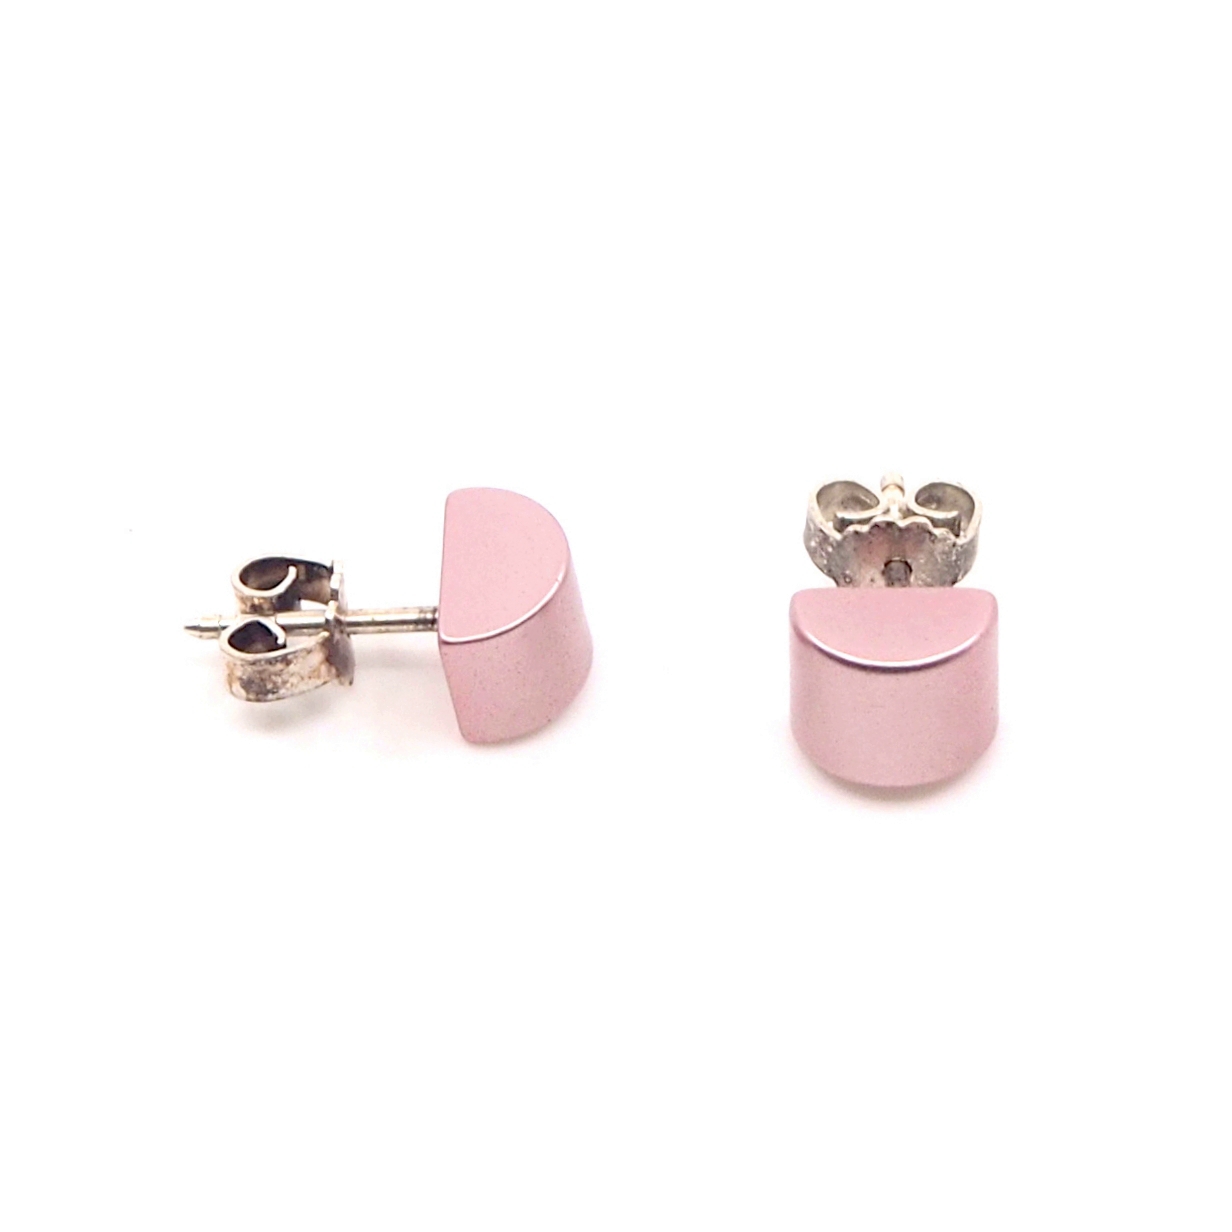 Otracosa sieraden roze oorbellen. Licht roze oorbellen sieraden